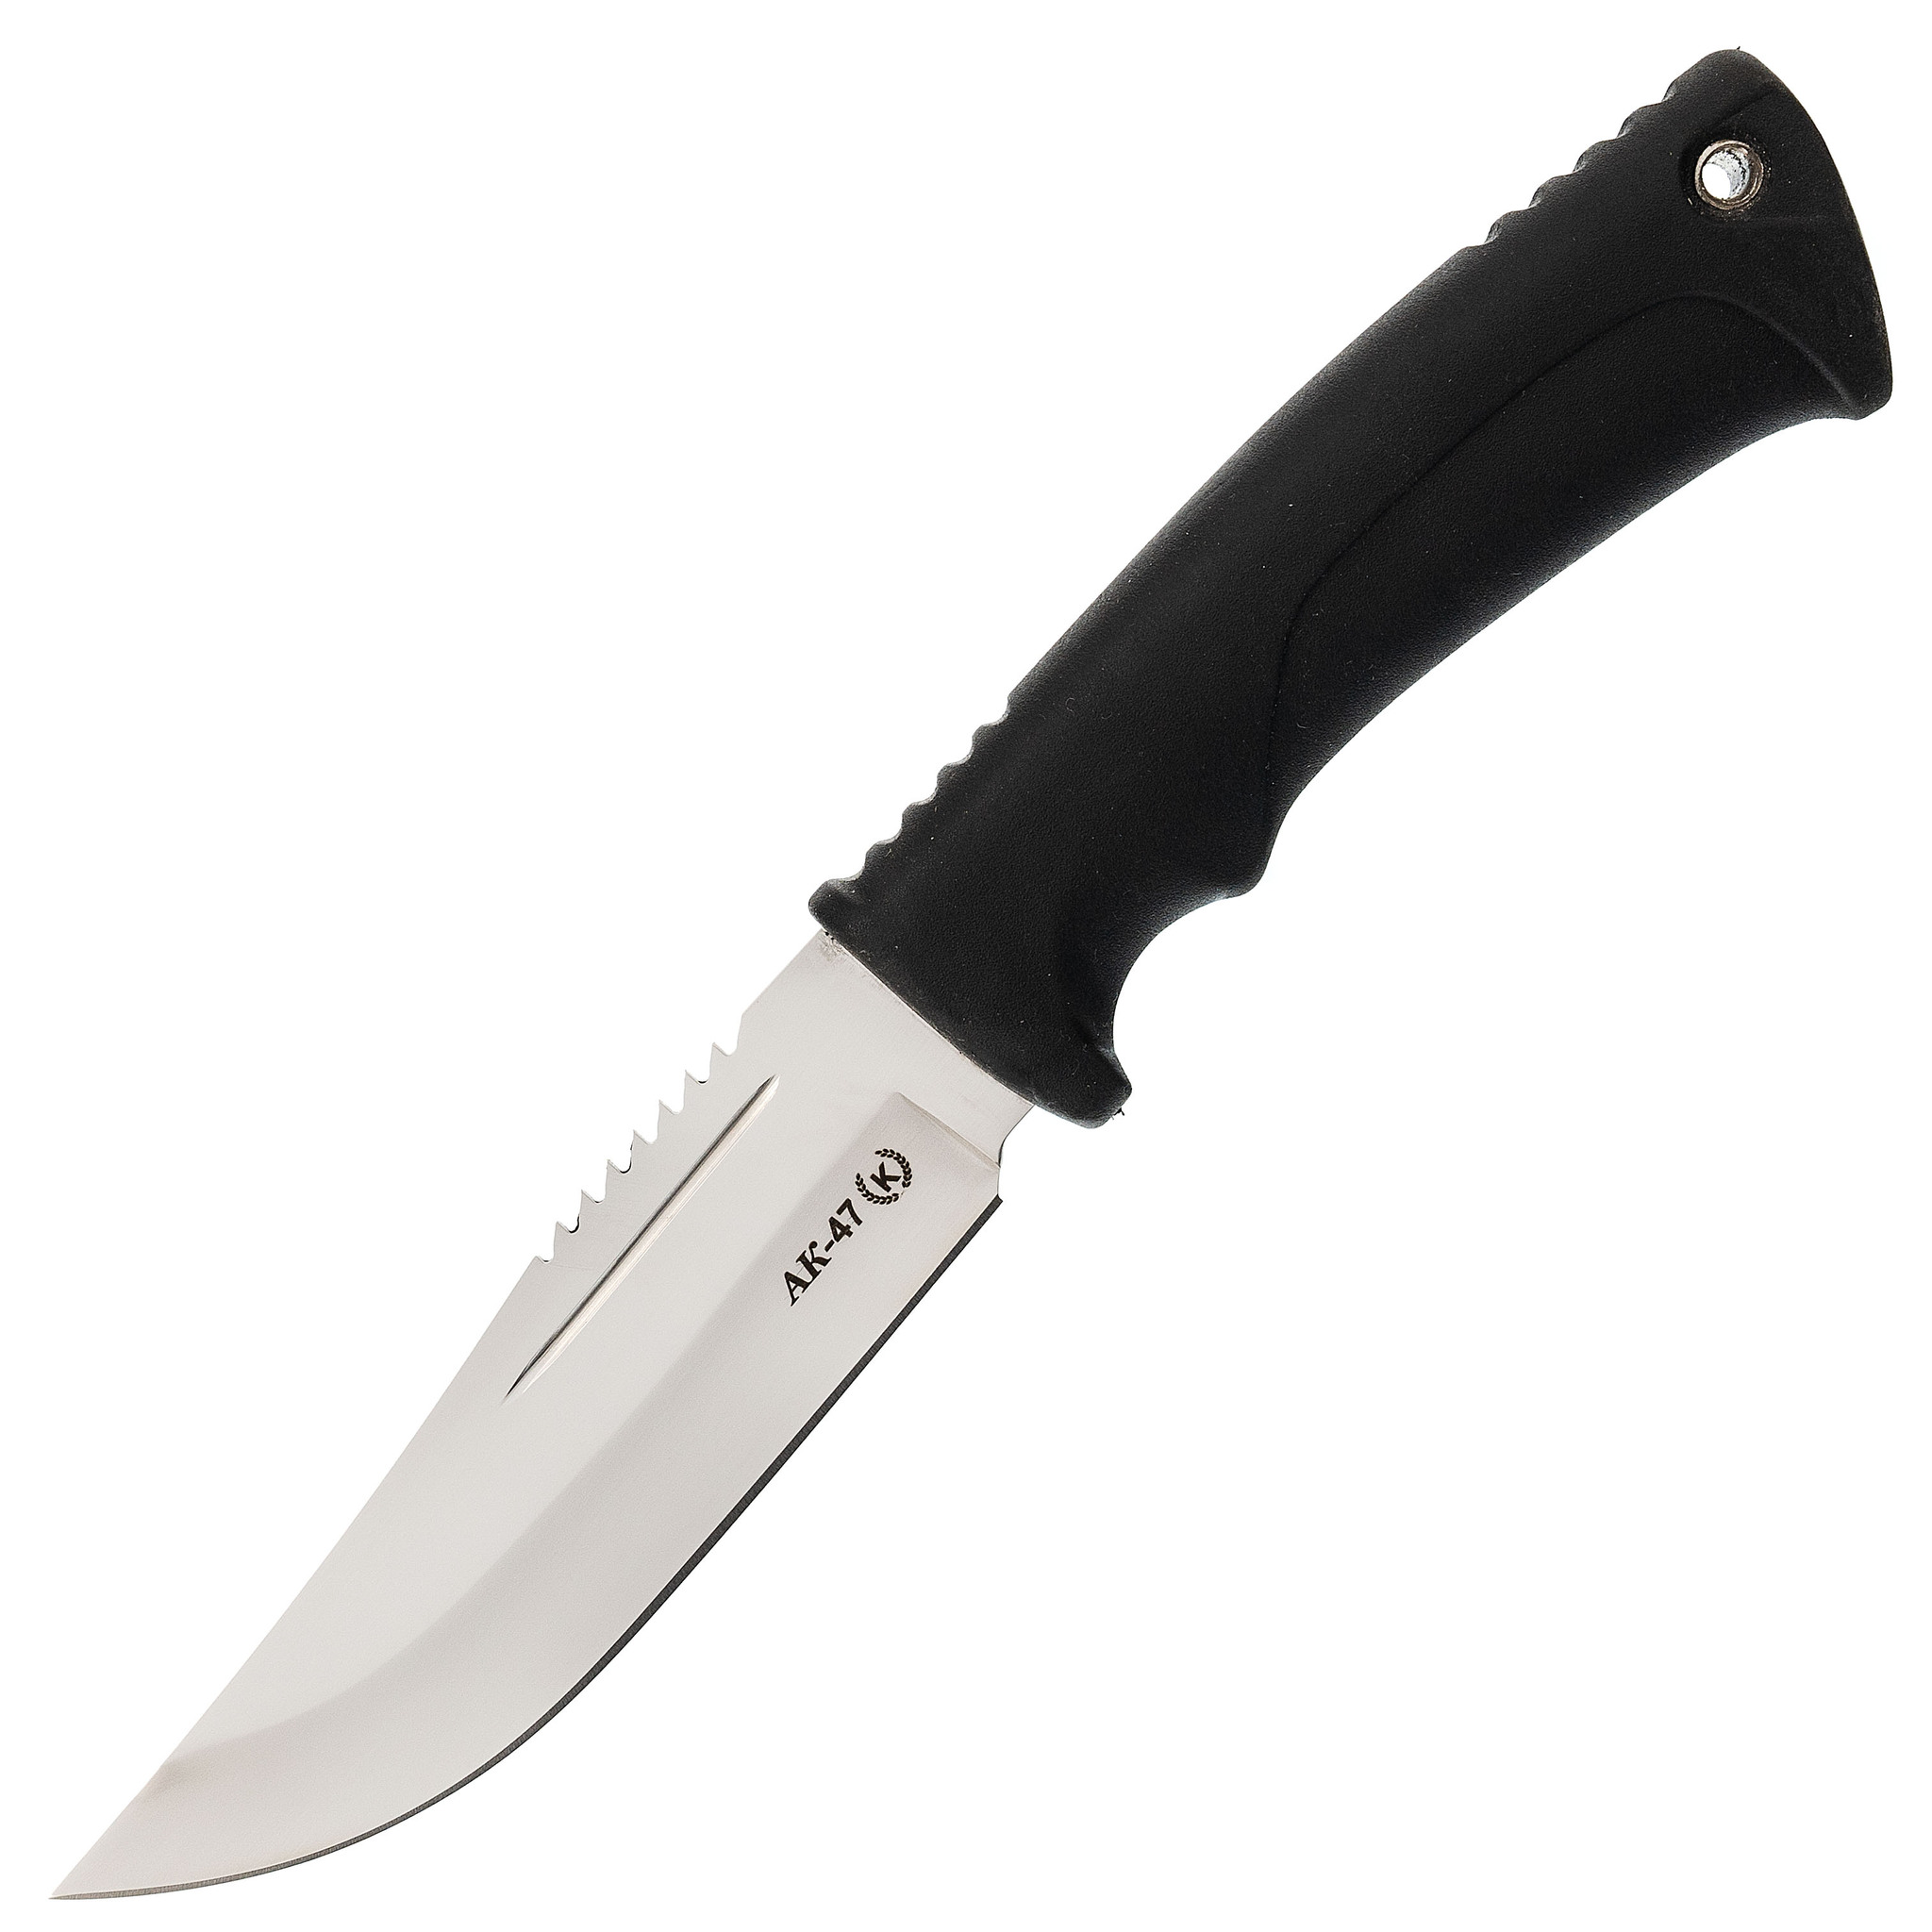 Титов и Солдатова нож Север-4 сталь 95х18 - купить в НожиMAN